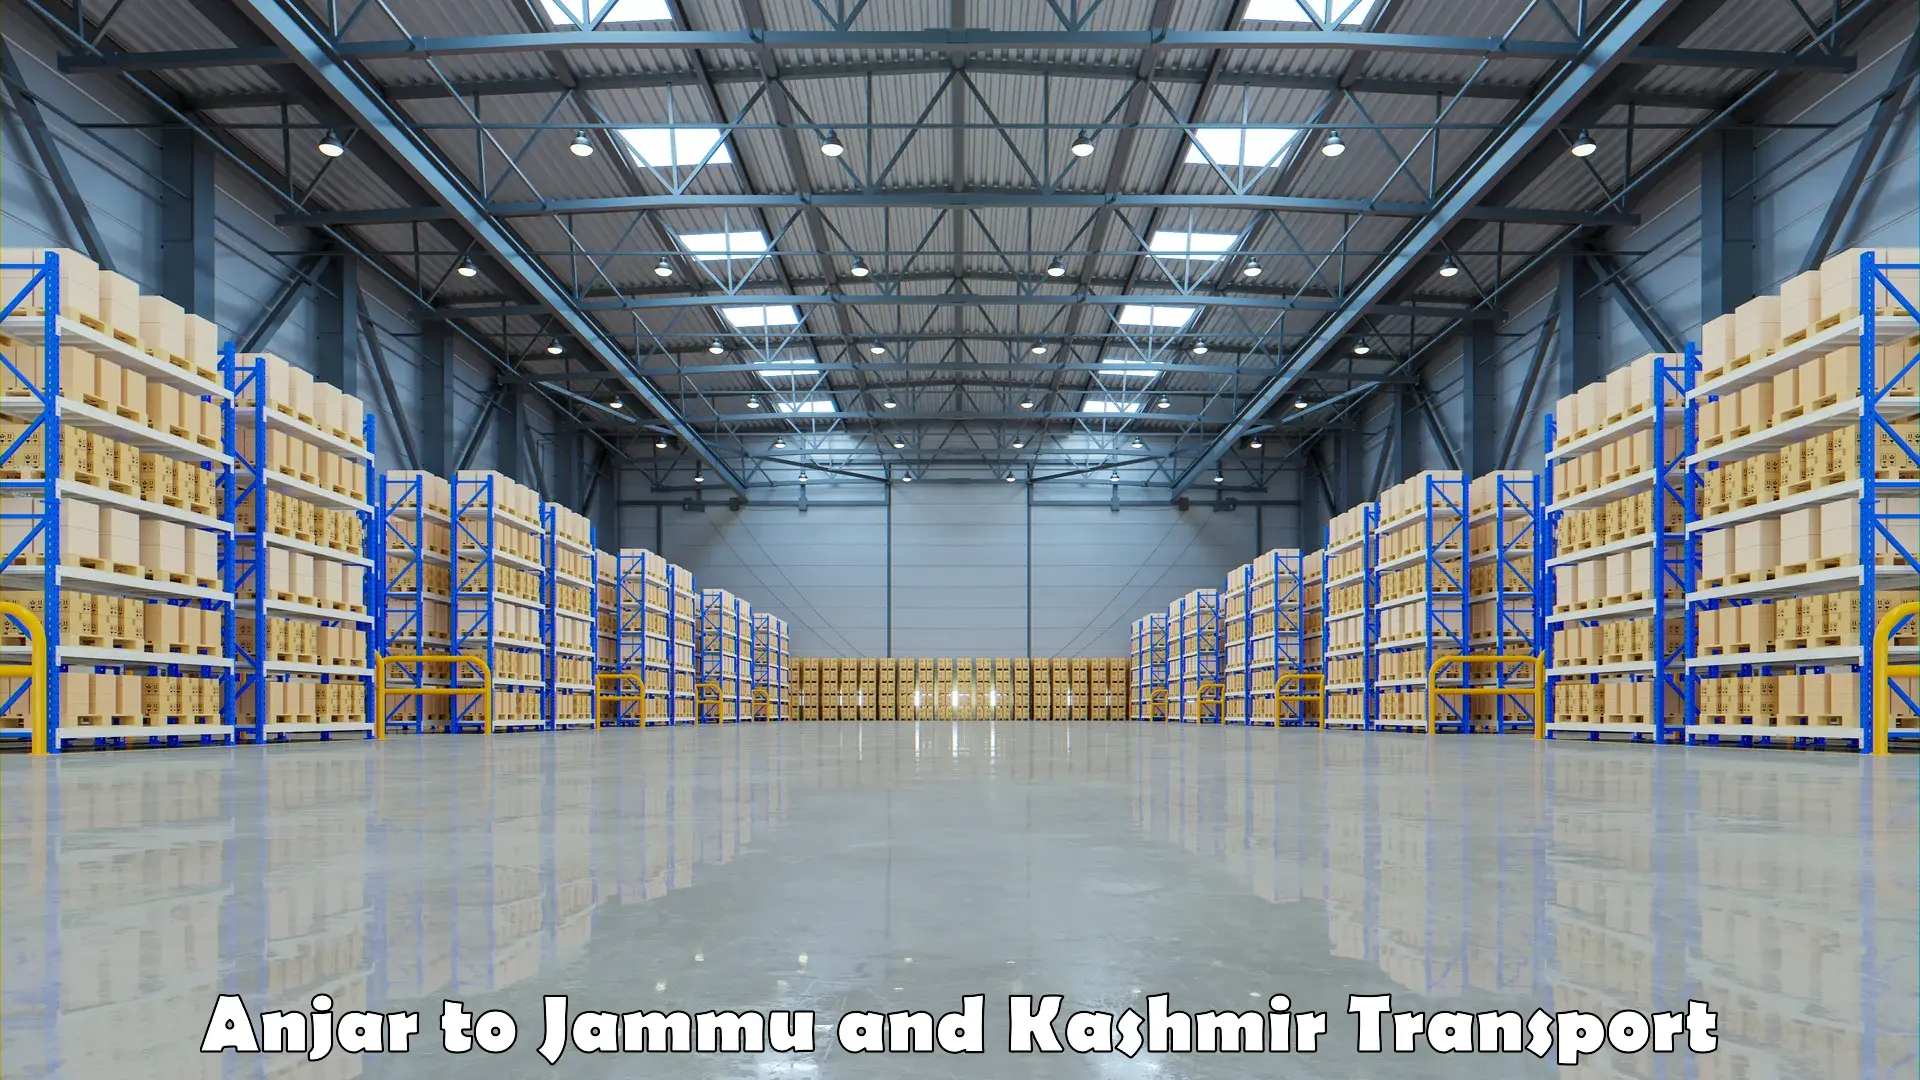 Pick up transport service Anjar to Jammu and Kashmir